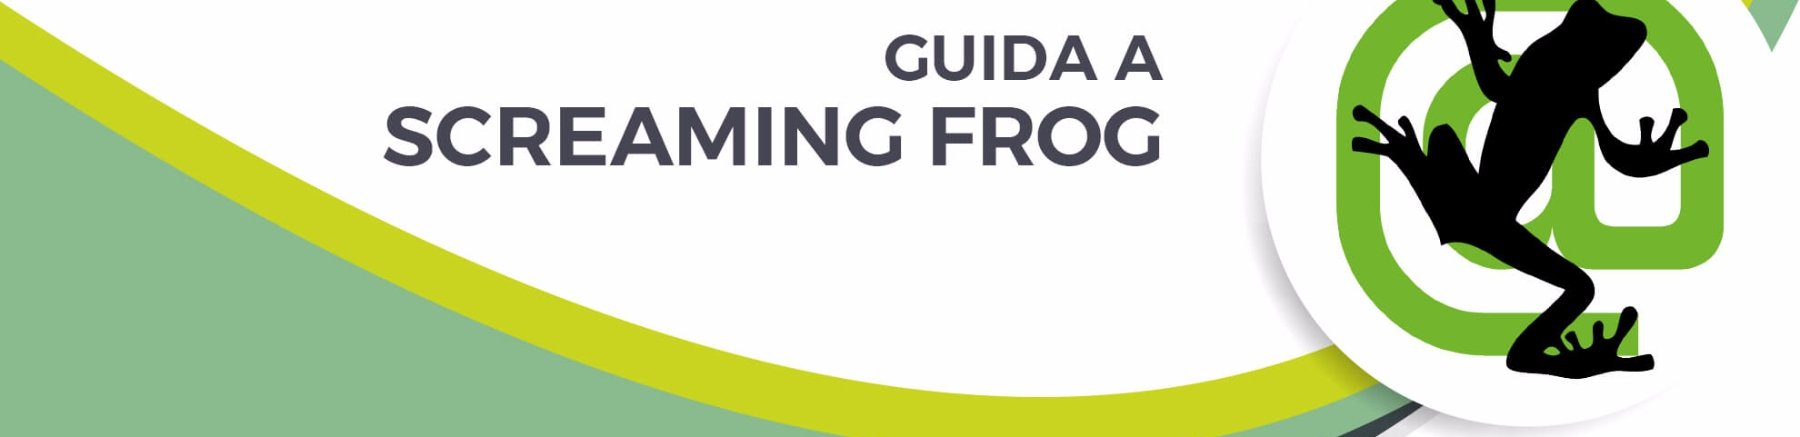 Guida Screaming Frog: domande e risposte (FAQ)